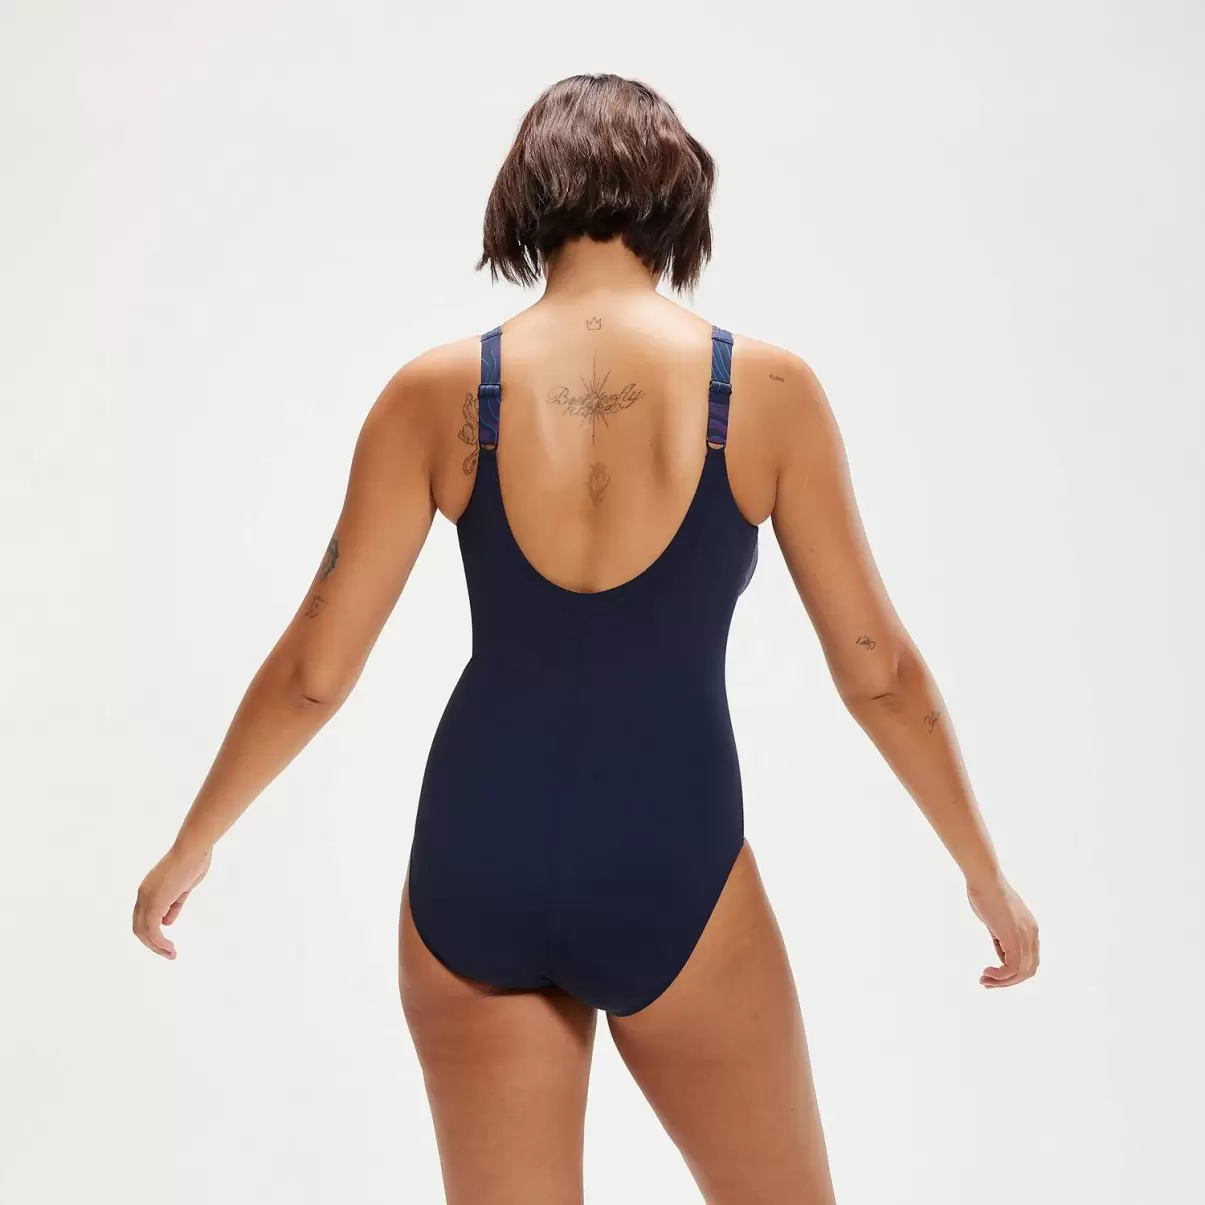 Shaping Lunalustre Bedruckter Badeanzug Für Damen Marineblau/Pflaume Speedo Badeanzüge Damen - 1